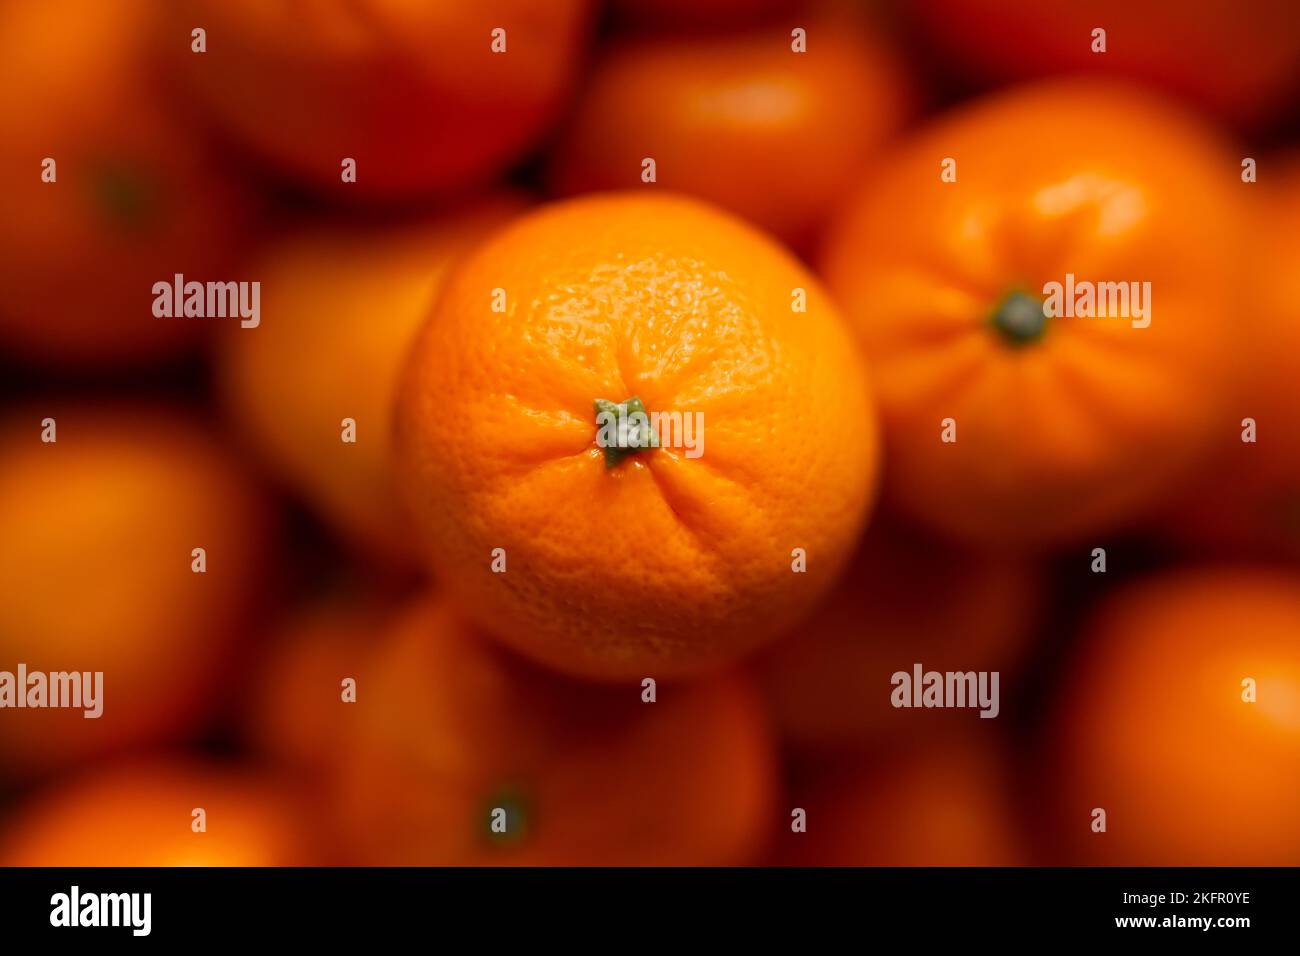 Cestino con mandarino o frutta d'arancia su fondo grigio a plaid. Cibo biologico. Foto Stock